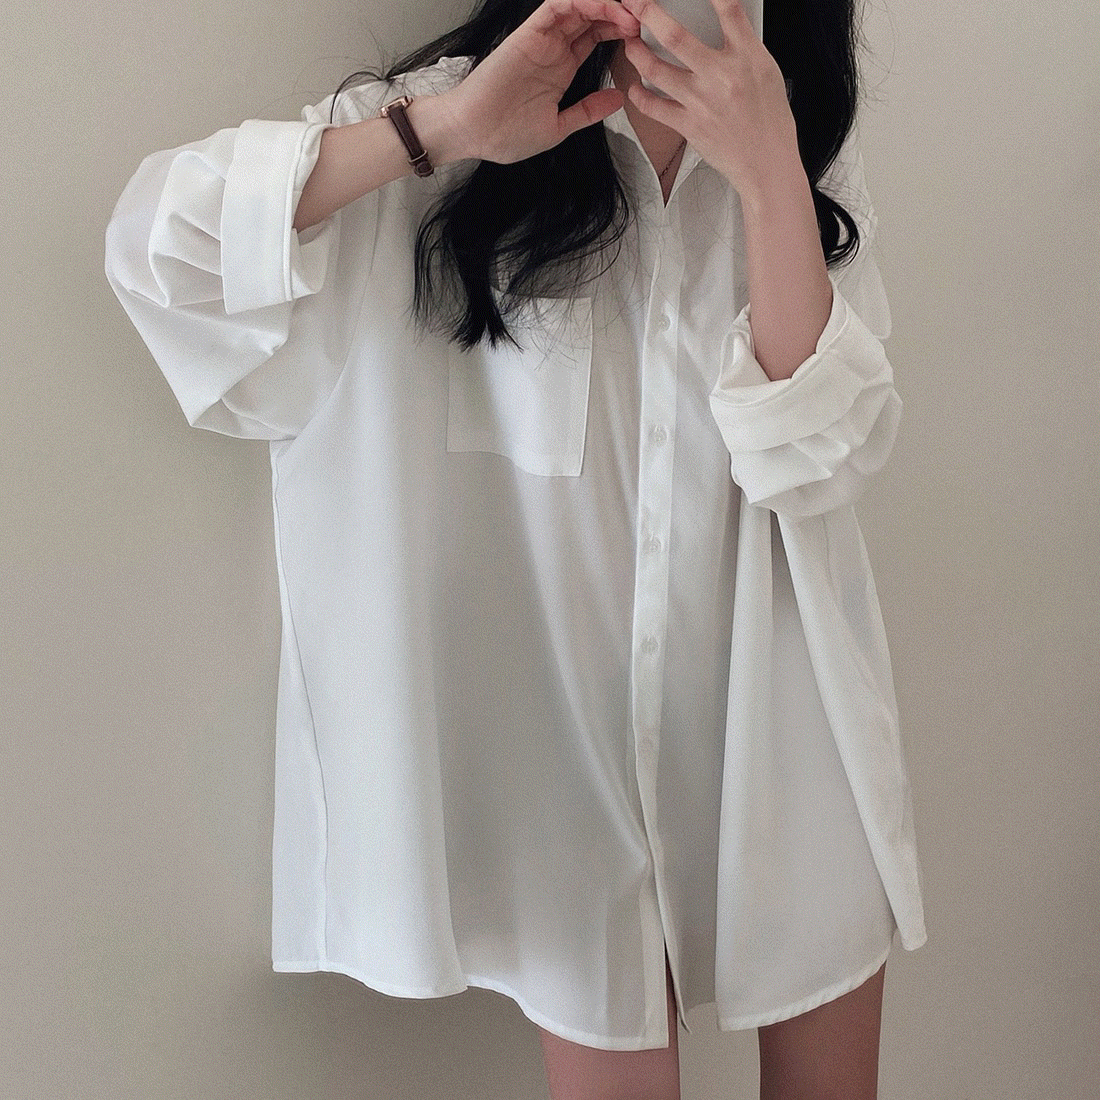 ワンポケットオーバーフィットロングシャツ - [10代・20代女性